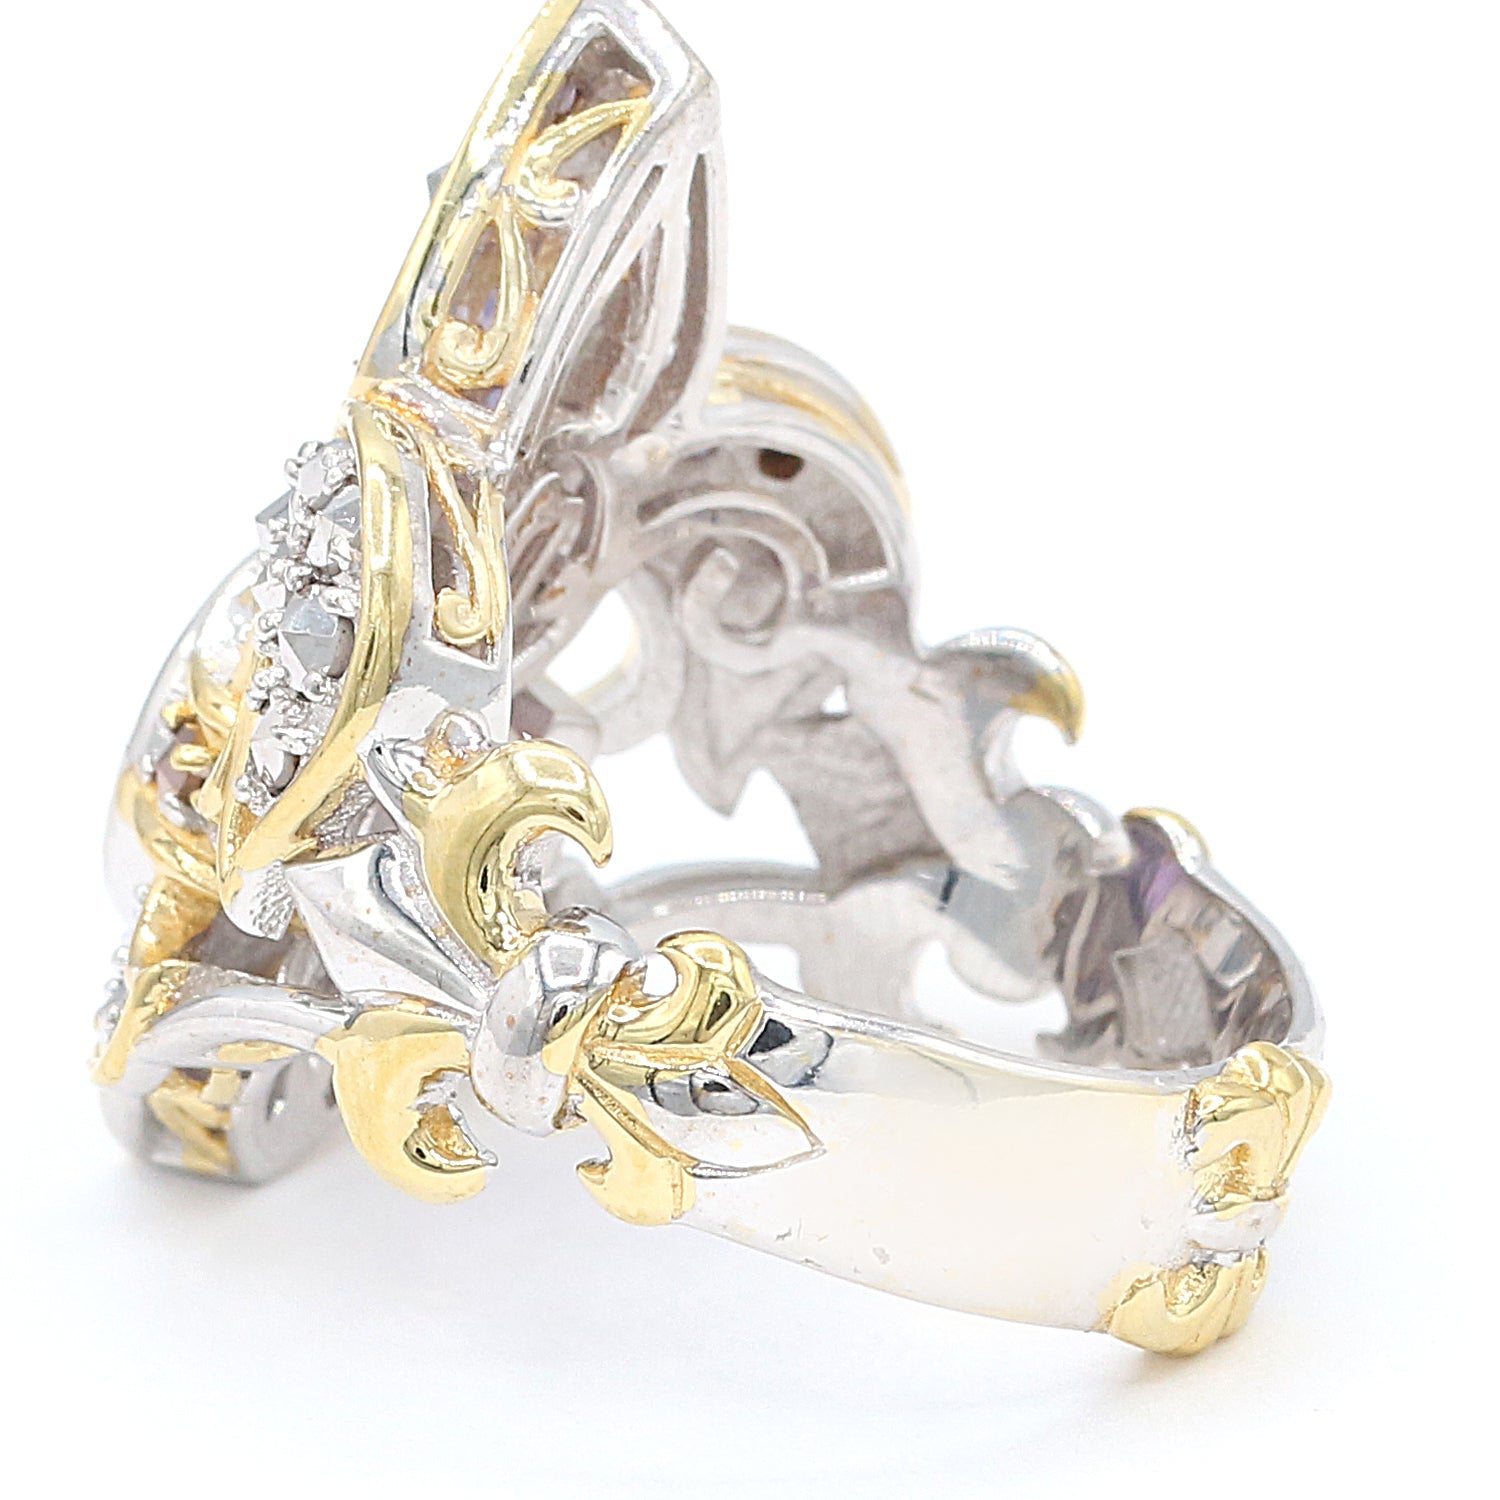 Gems en Vogue 2.14ctw Amethyst & Marcasite Fleur-de-lis Ring CANNOT BE RESIZED